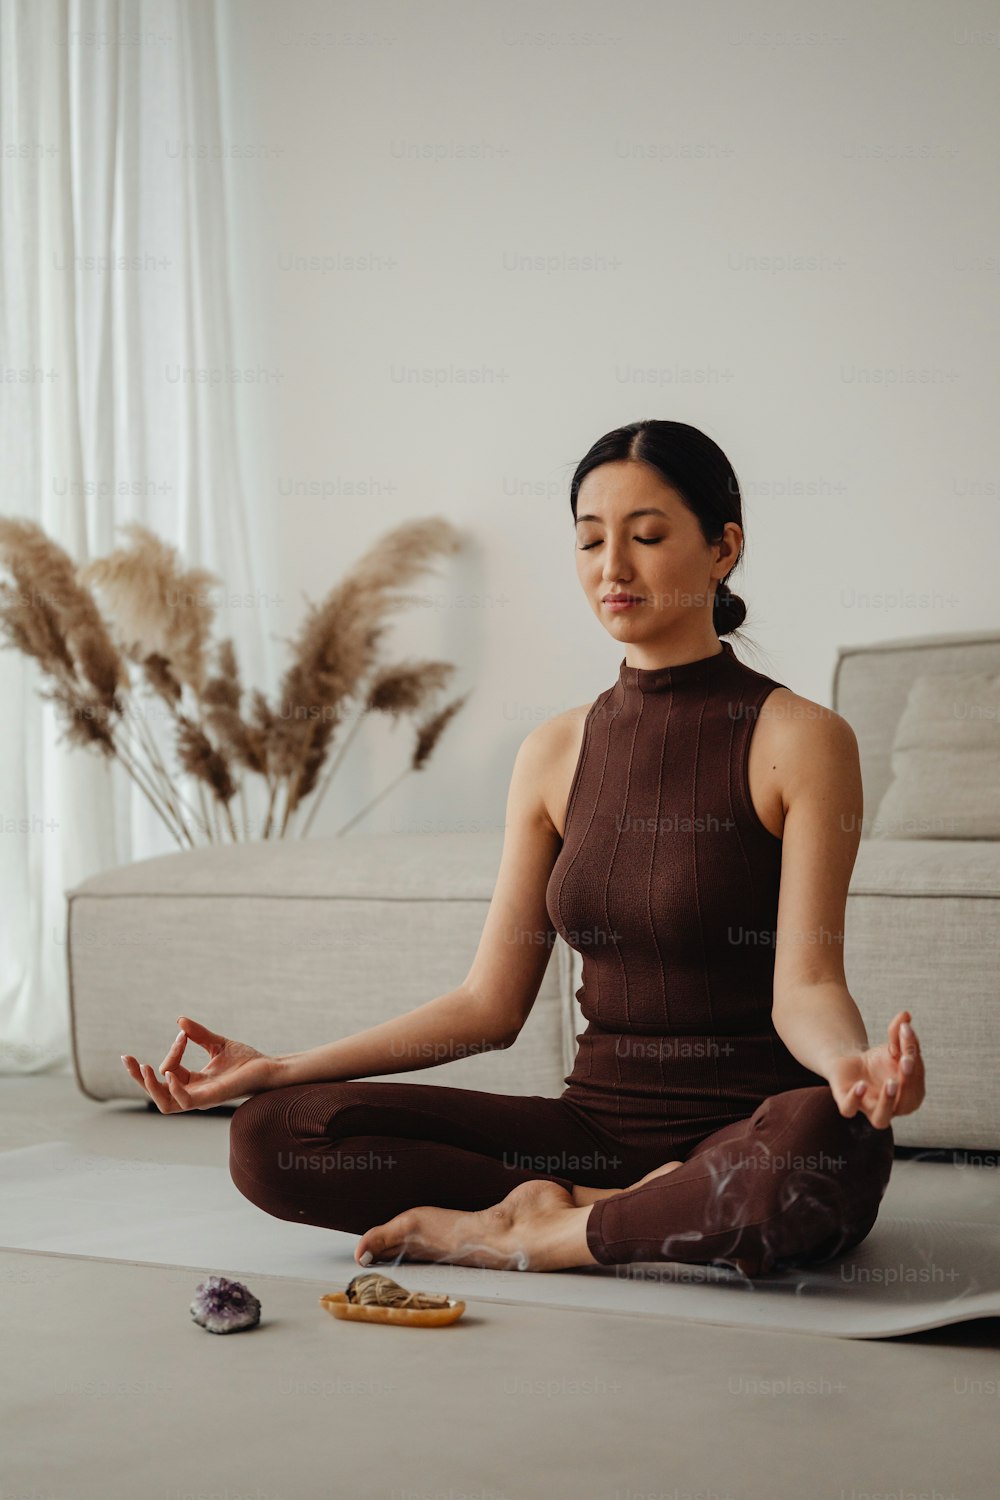 Eine Frau, die mit geschlossenen Augen in einer Yoga-Position sitzt